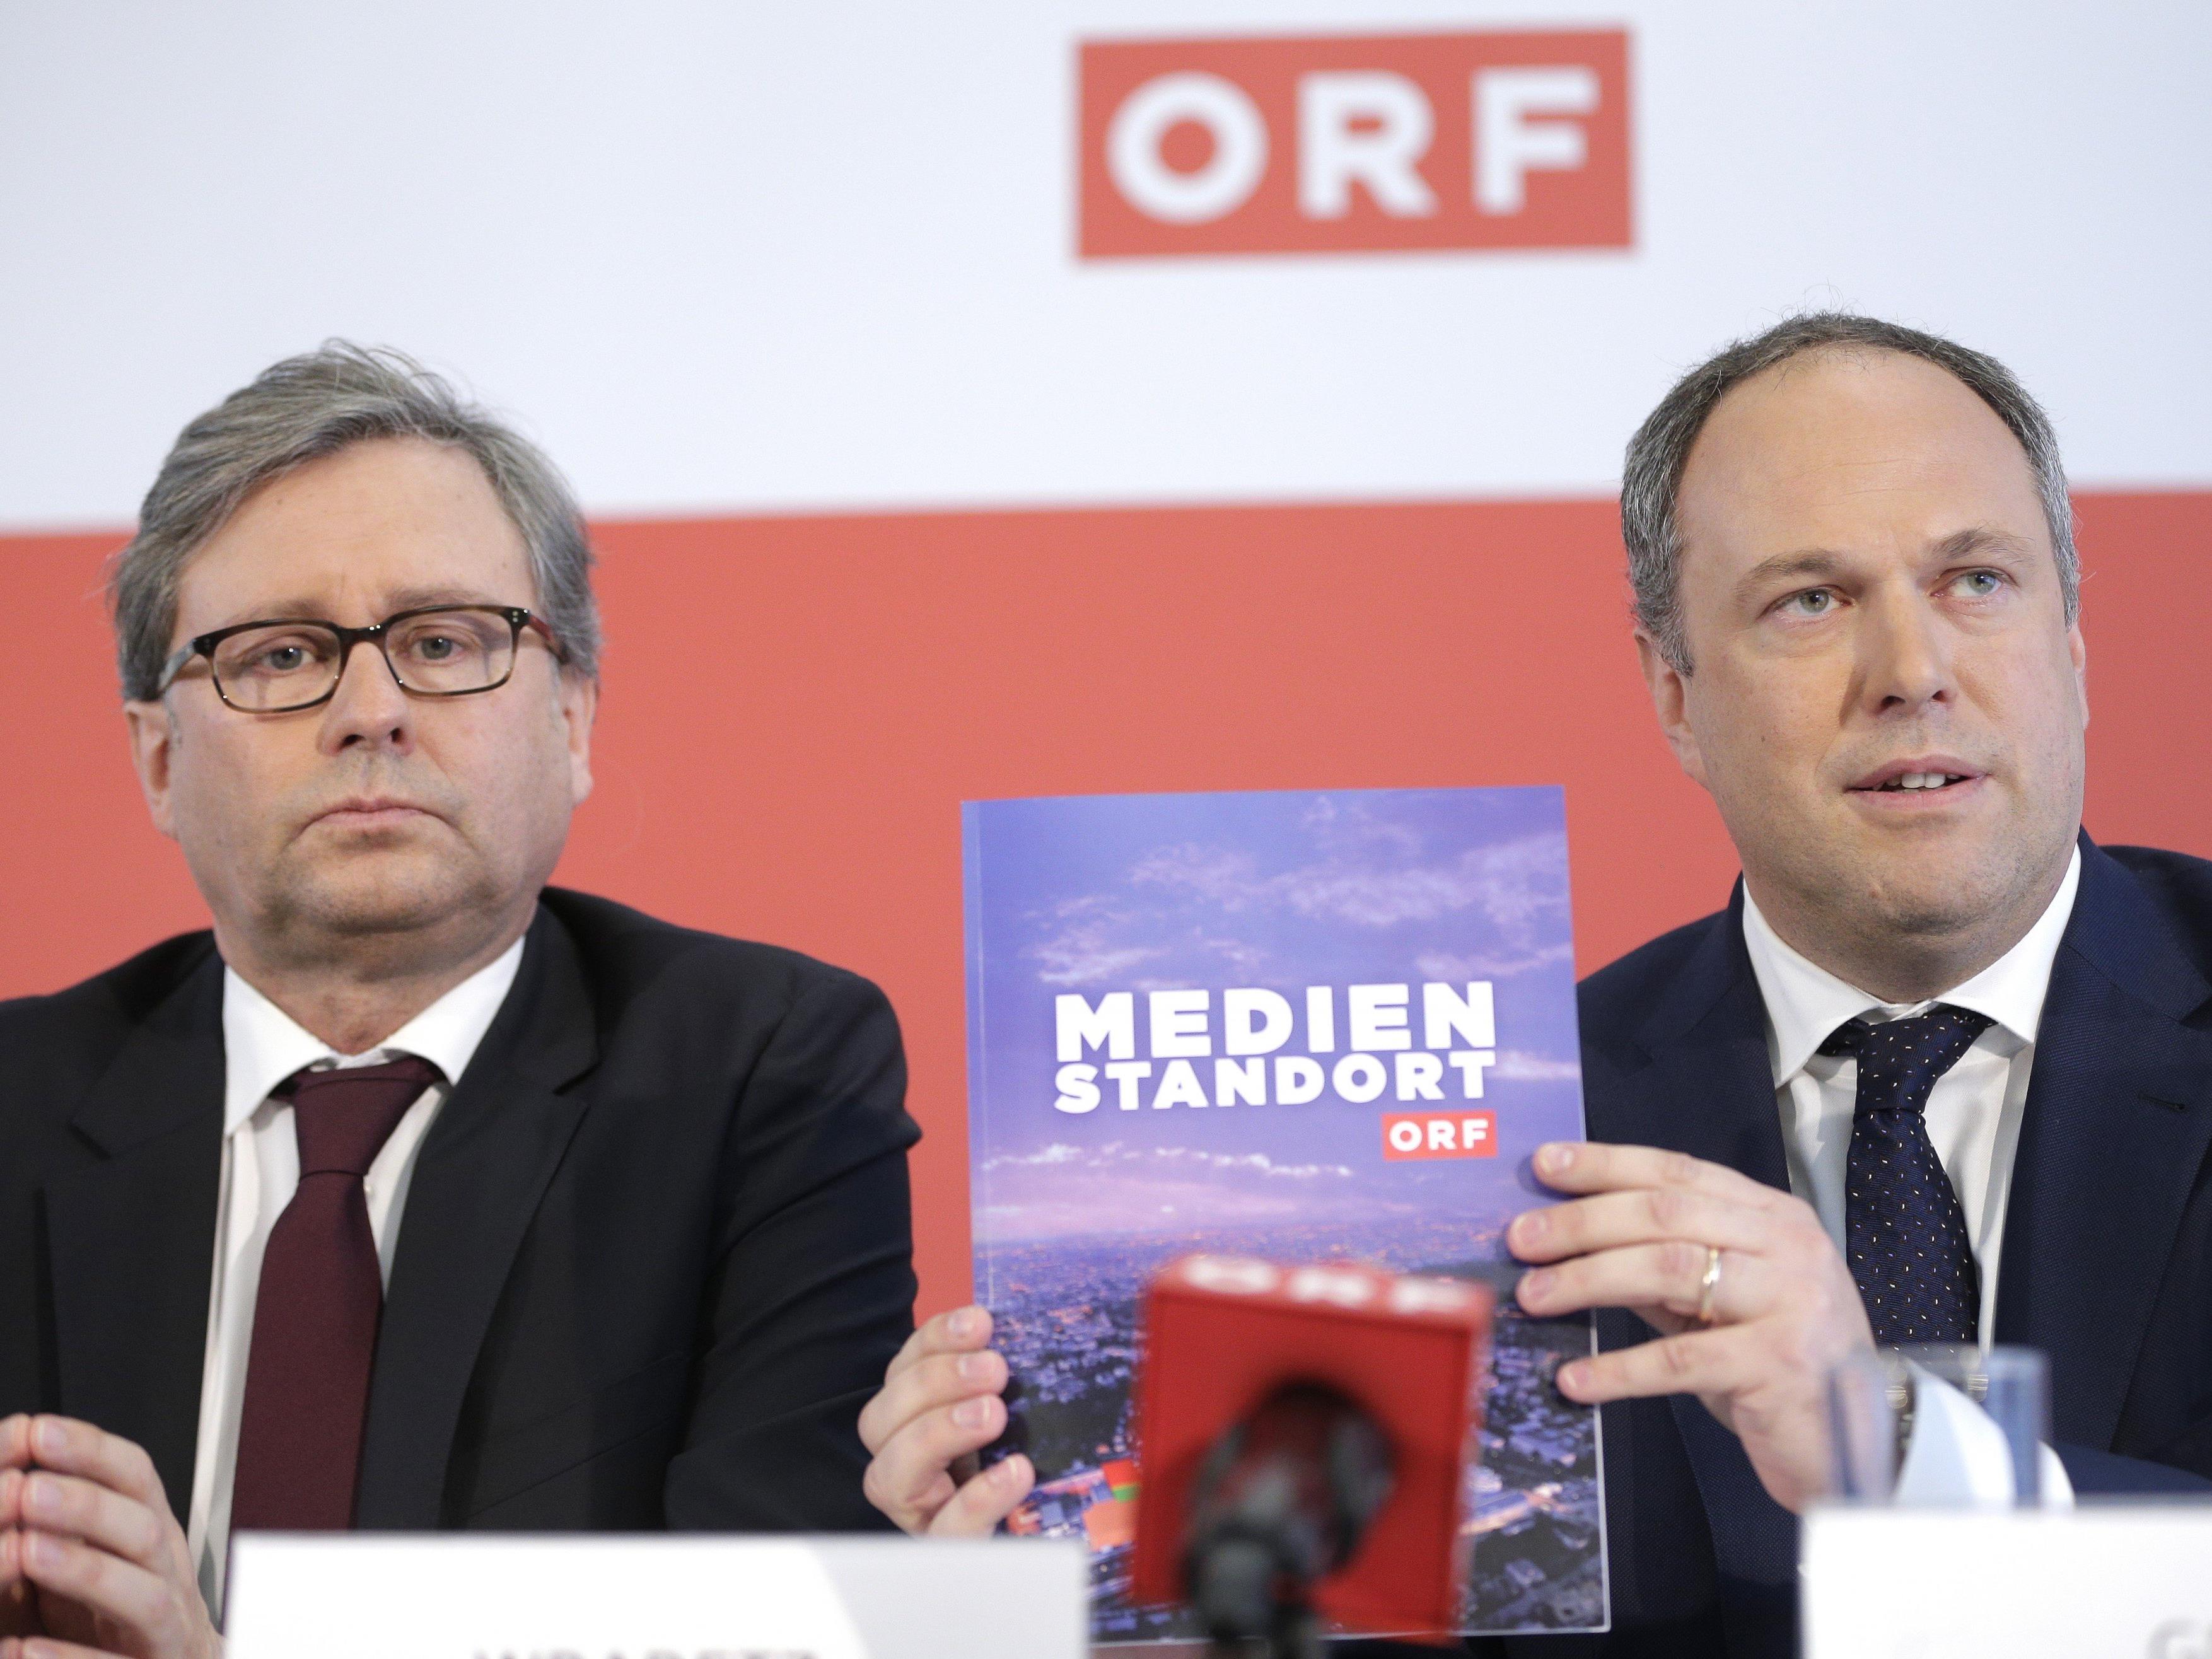 Spannung vor der ORF-Wahl.